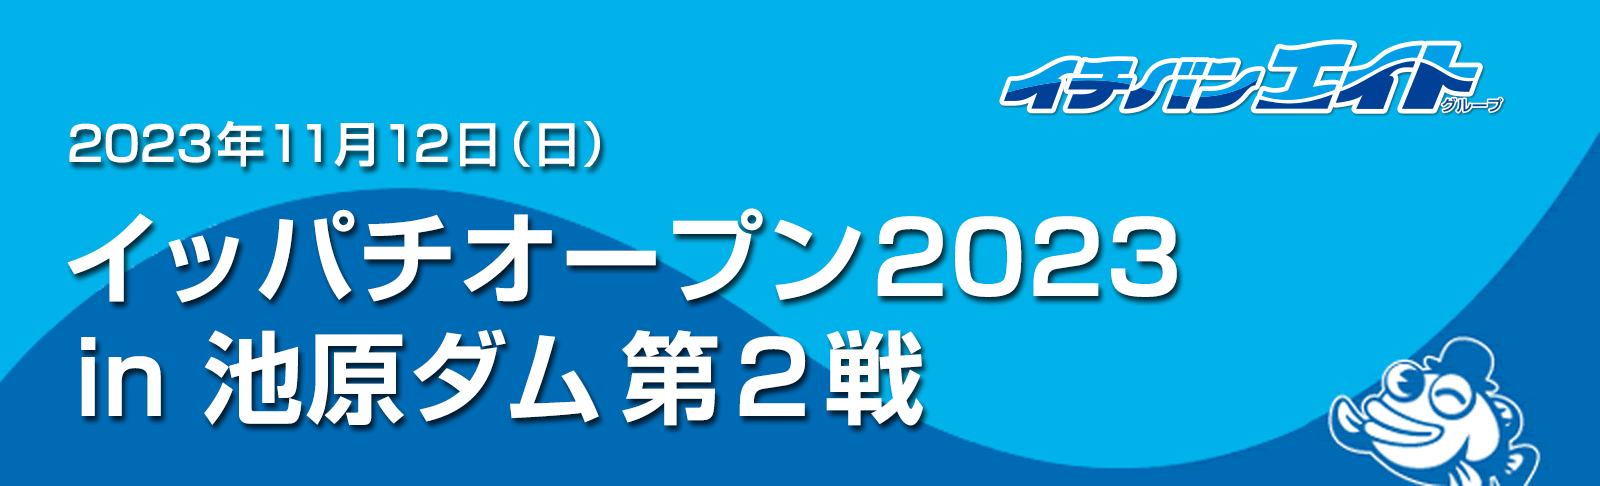 「イッパッチオープン2023 ㏌ 池原ダム第2戦」を開催！